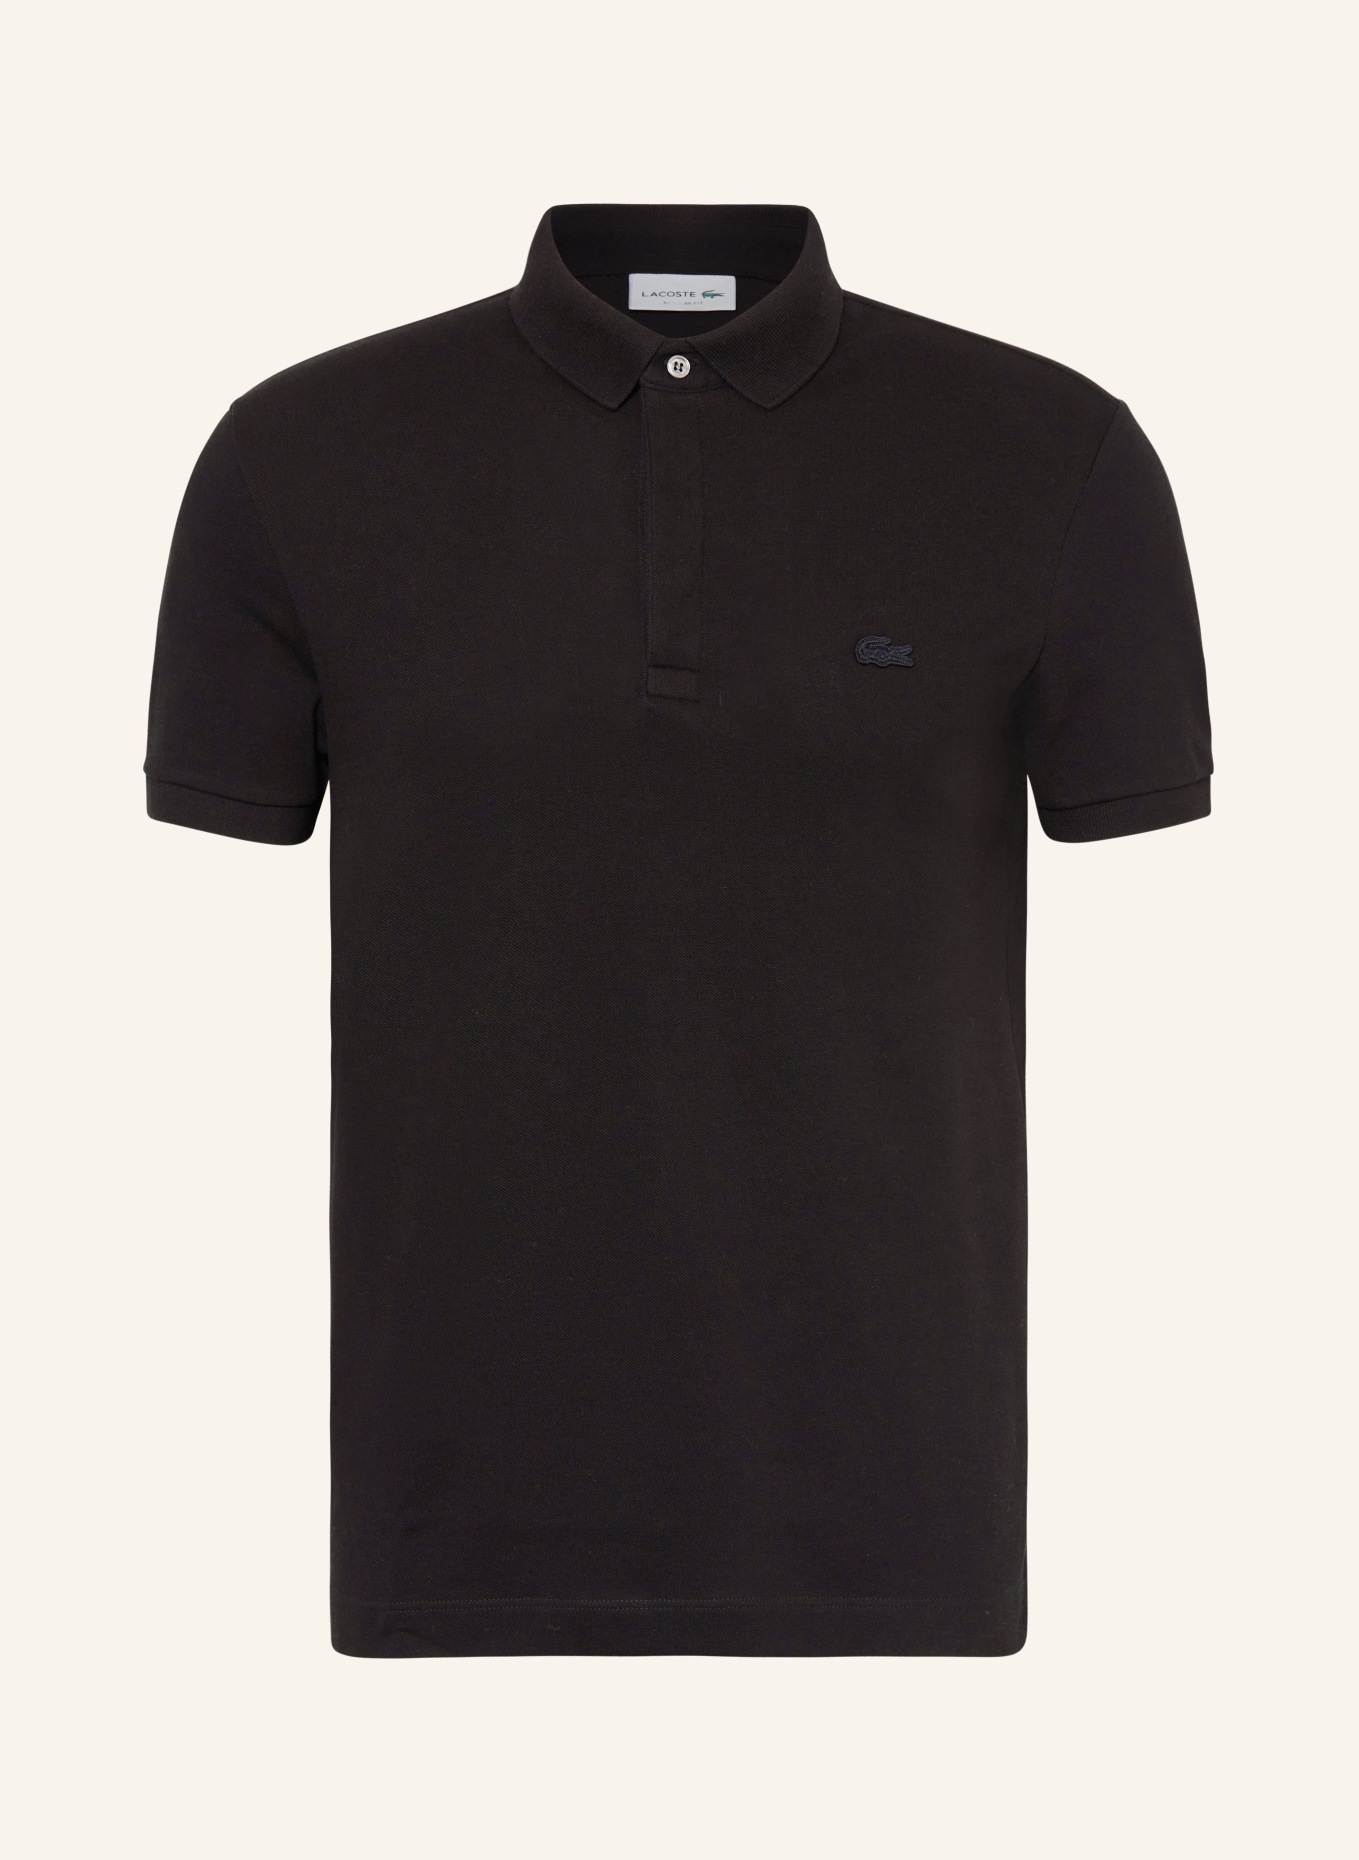 LACOSTE Piqué-Poloshirt, Farbe: SCHWARZ (Bild 1)